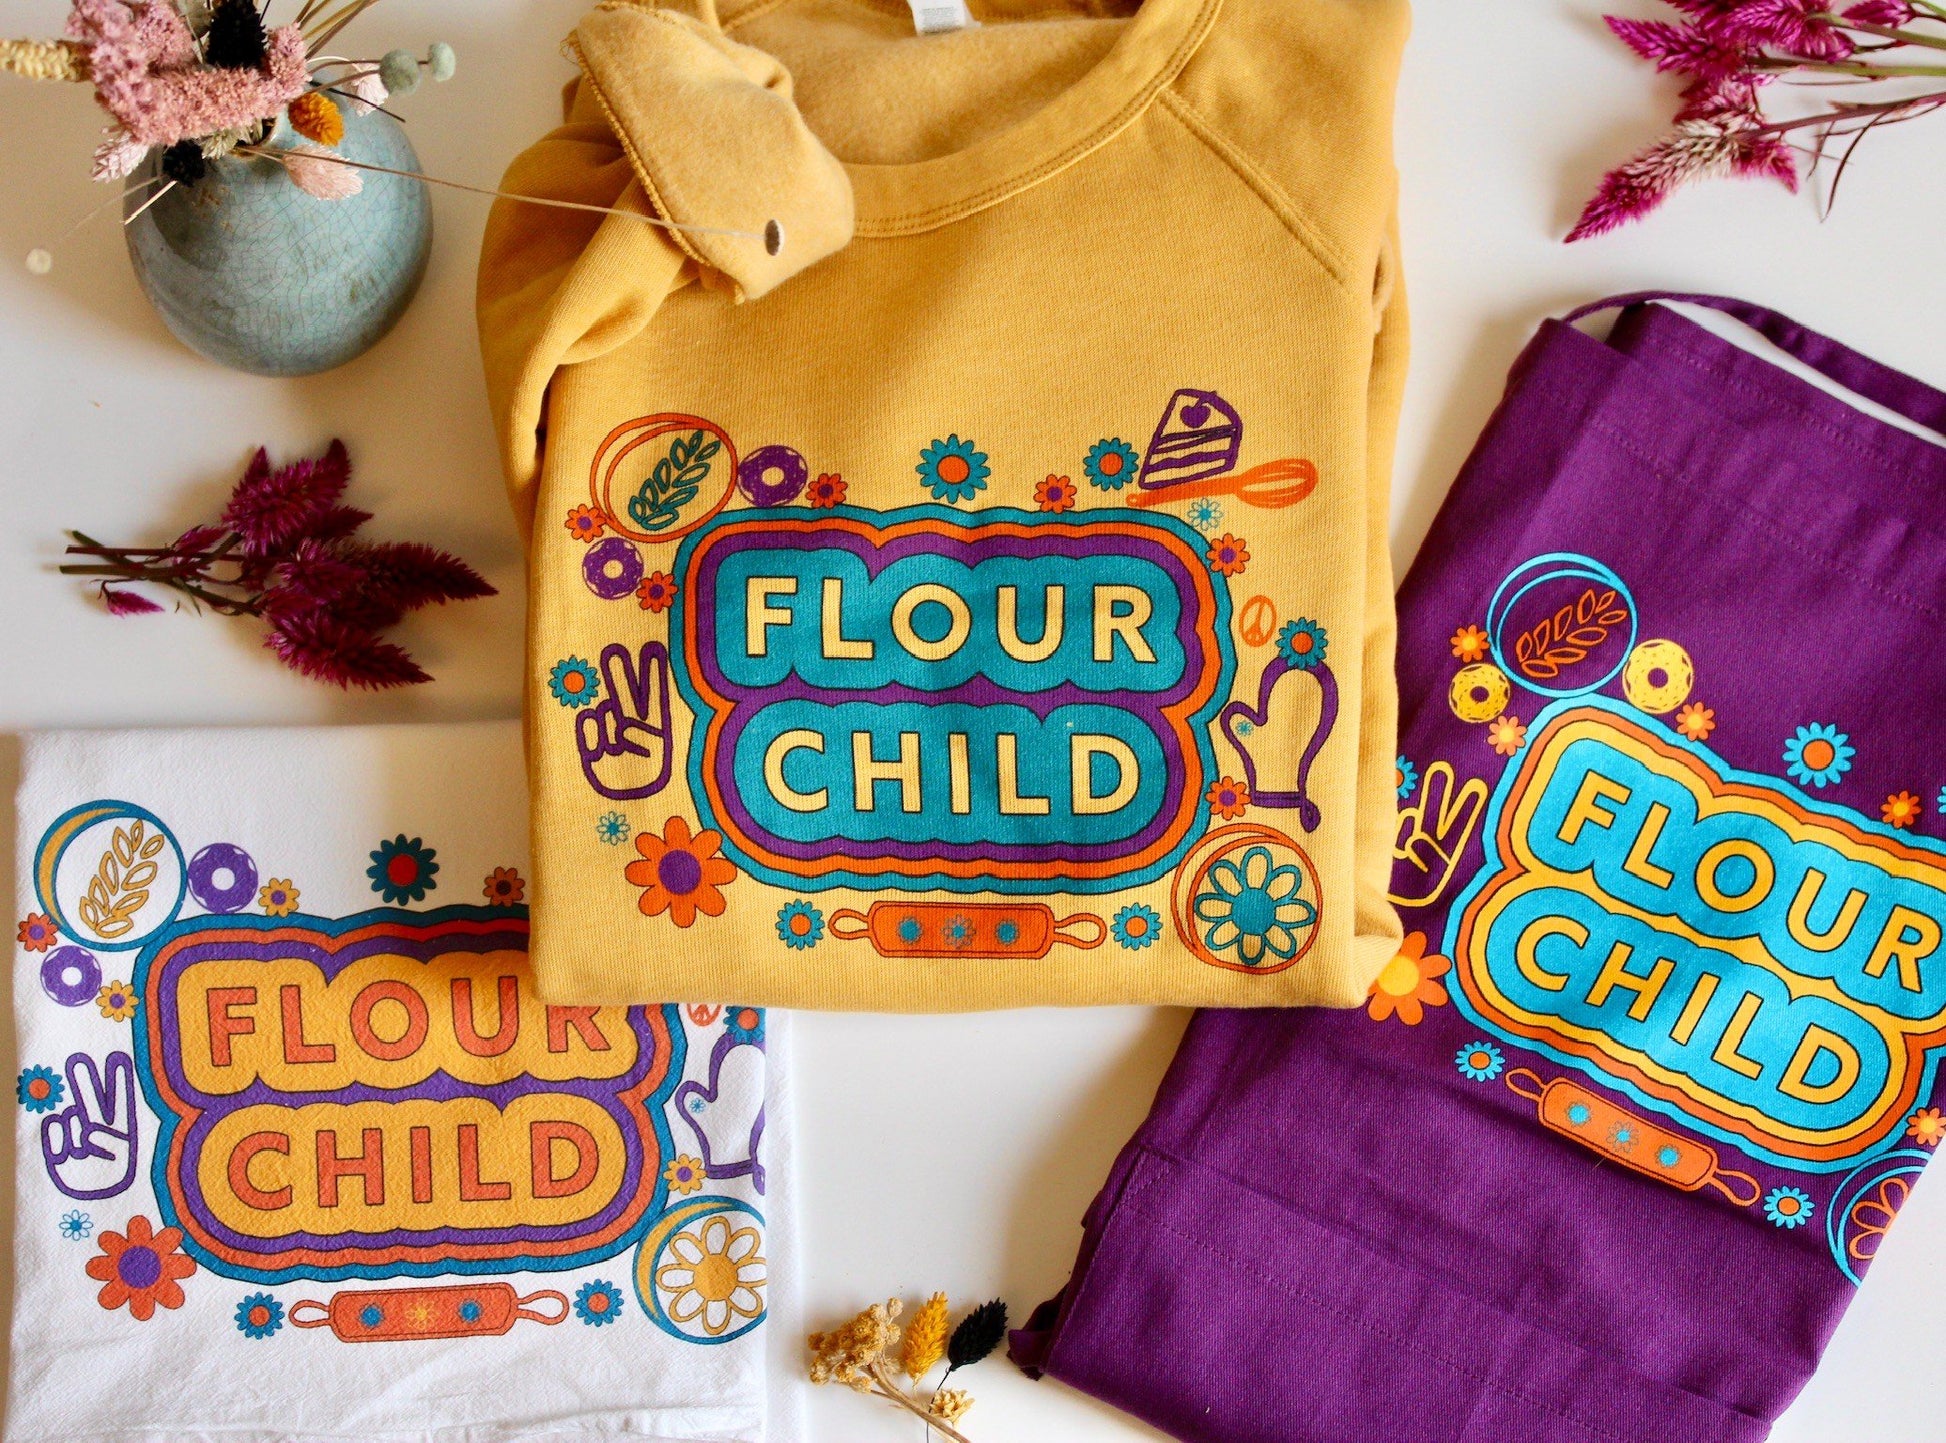 Flour Child Tea Towel, kitchen towels, flower child